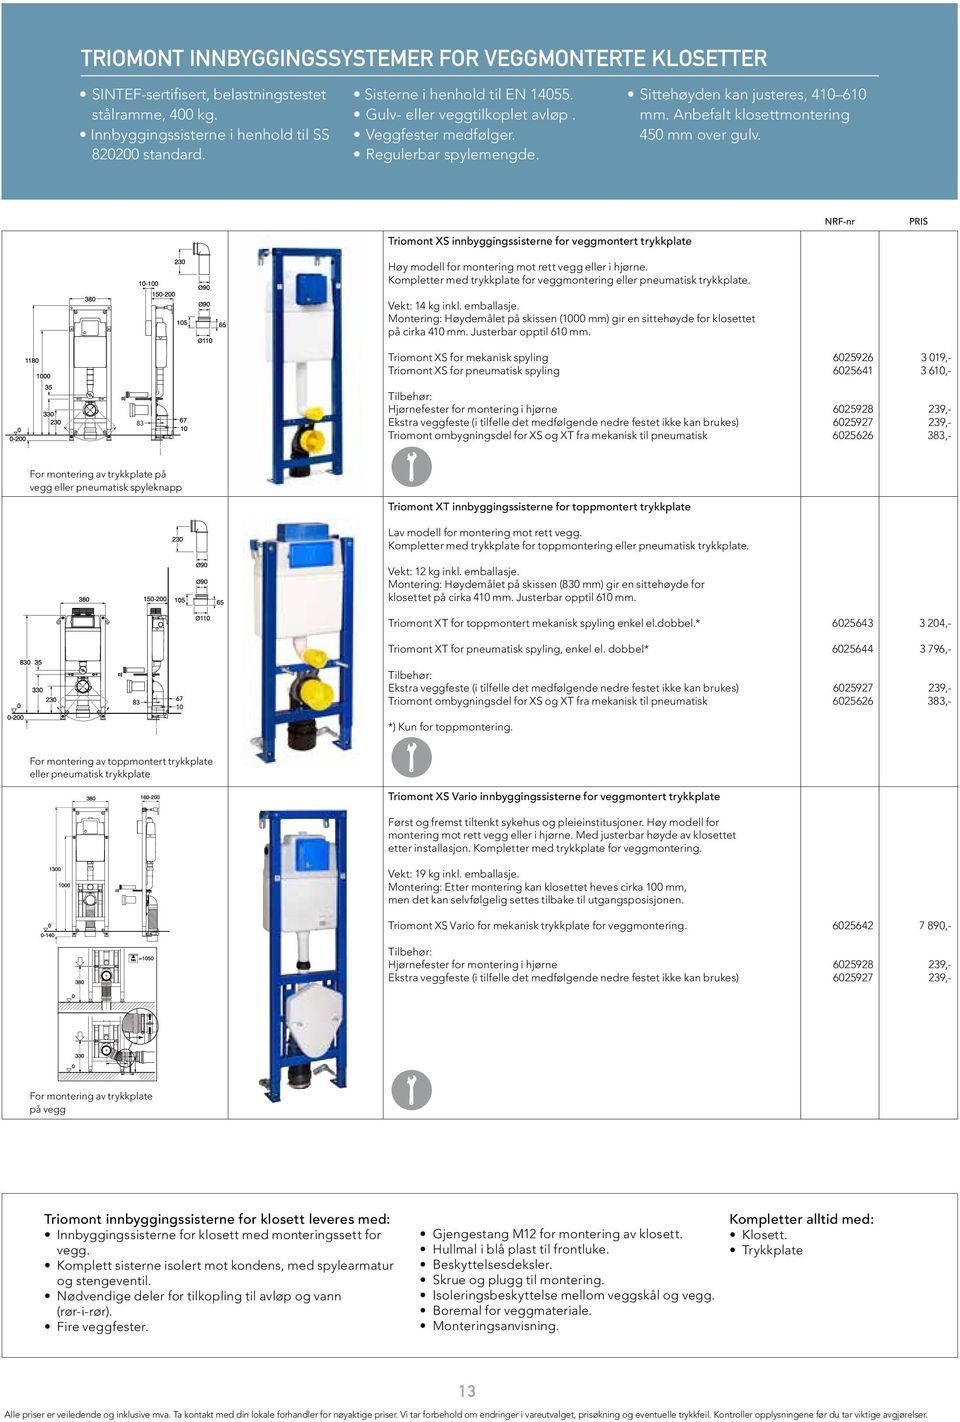 Triomont XS innbyggingssisterne for veggmontert trykkplate Høy modell for montering mot rett vegg eller i hjørne. Kompletter med trykkplate for veggmontering eller pneumatisk trykkplate.